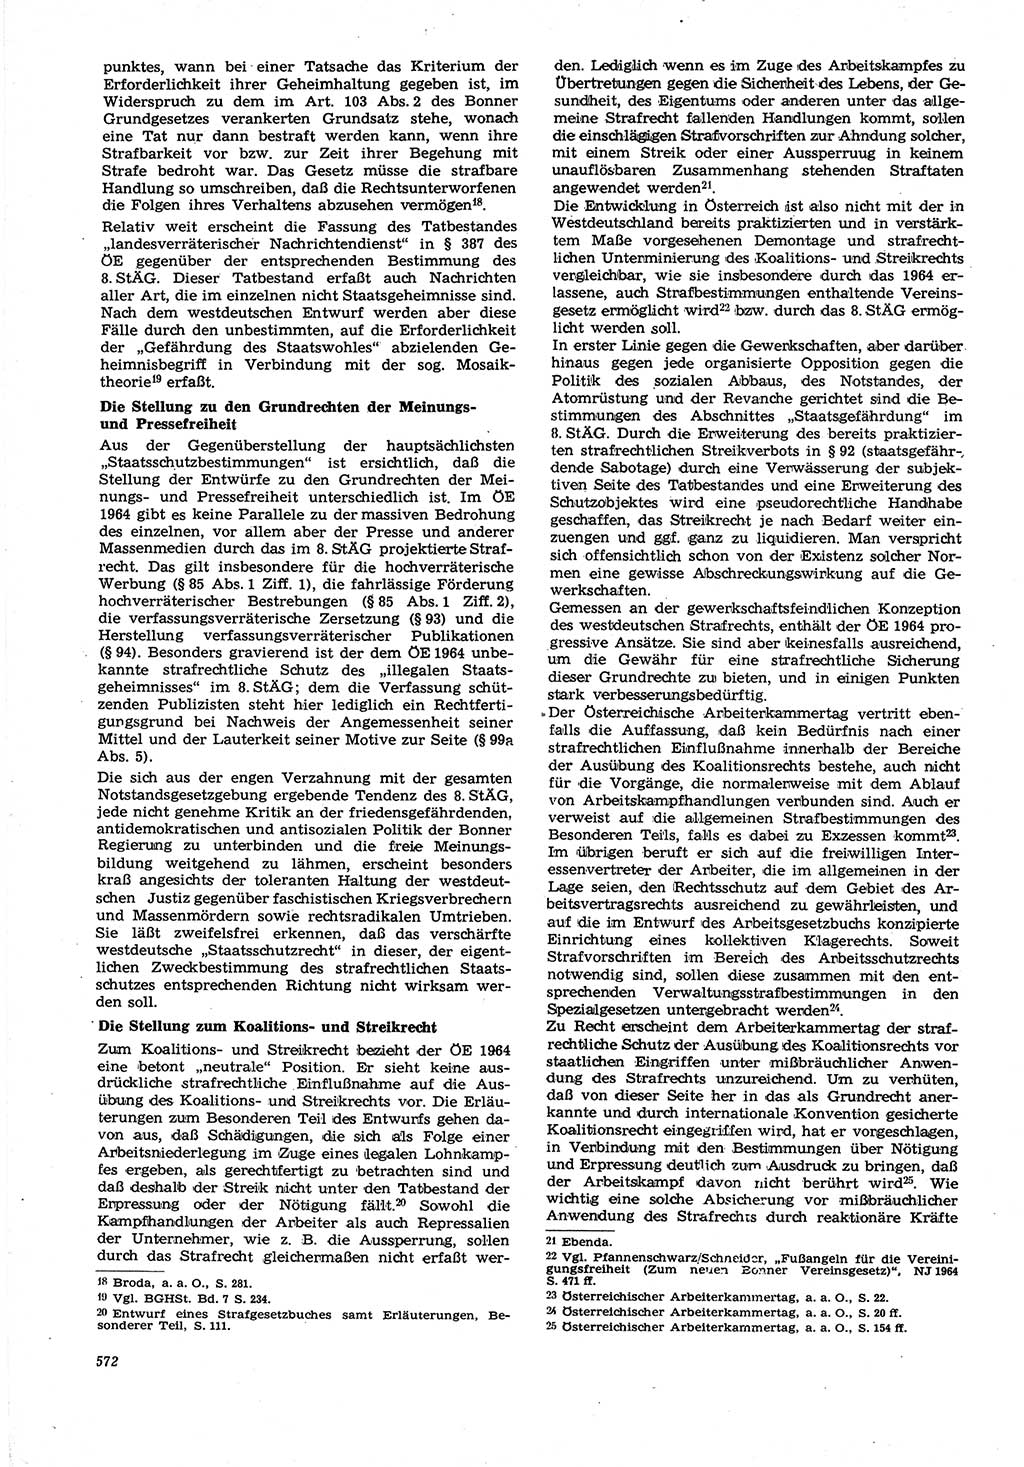 Neue Justiz (NJ), Zeitschrift für Recht und Rechtswissenschaft [Deutsche Demokratische Republik (DDR)], 21. Jahrgang 1967, Seite 572 (NJ DDR 1967, S. 572)